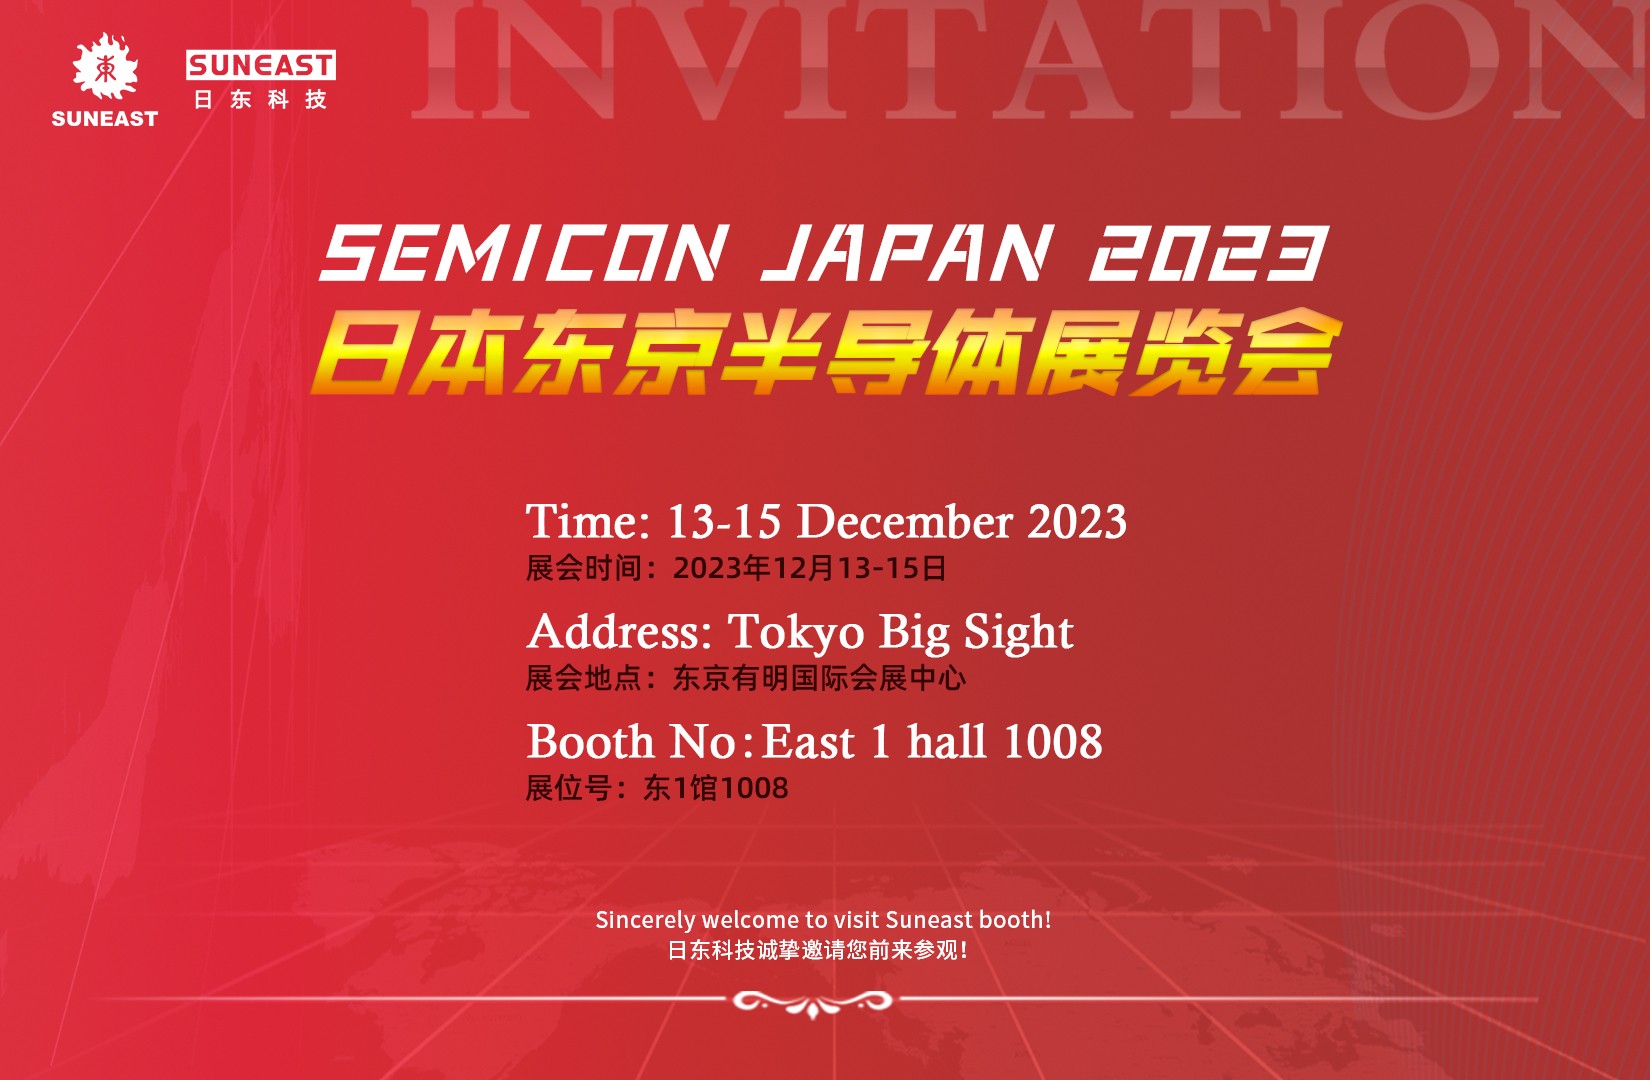 日东科技邀请您参加日本半导体展览会 SEMICON Japan 2023